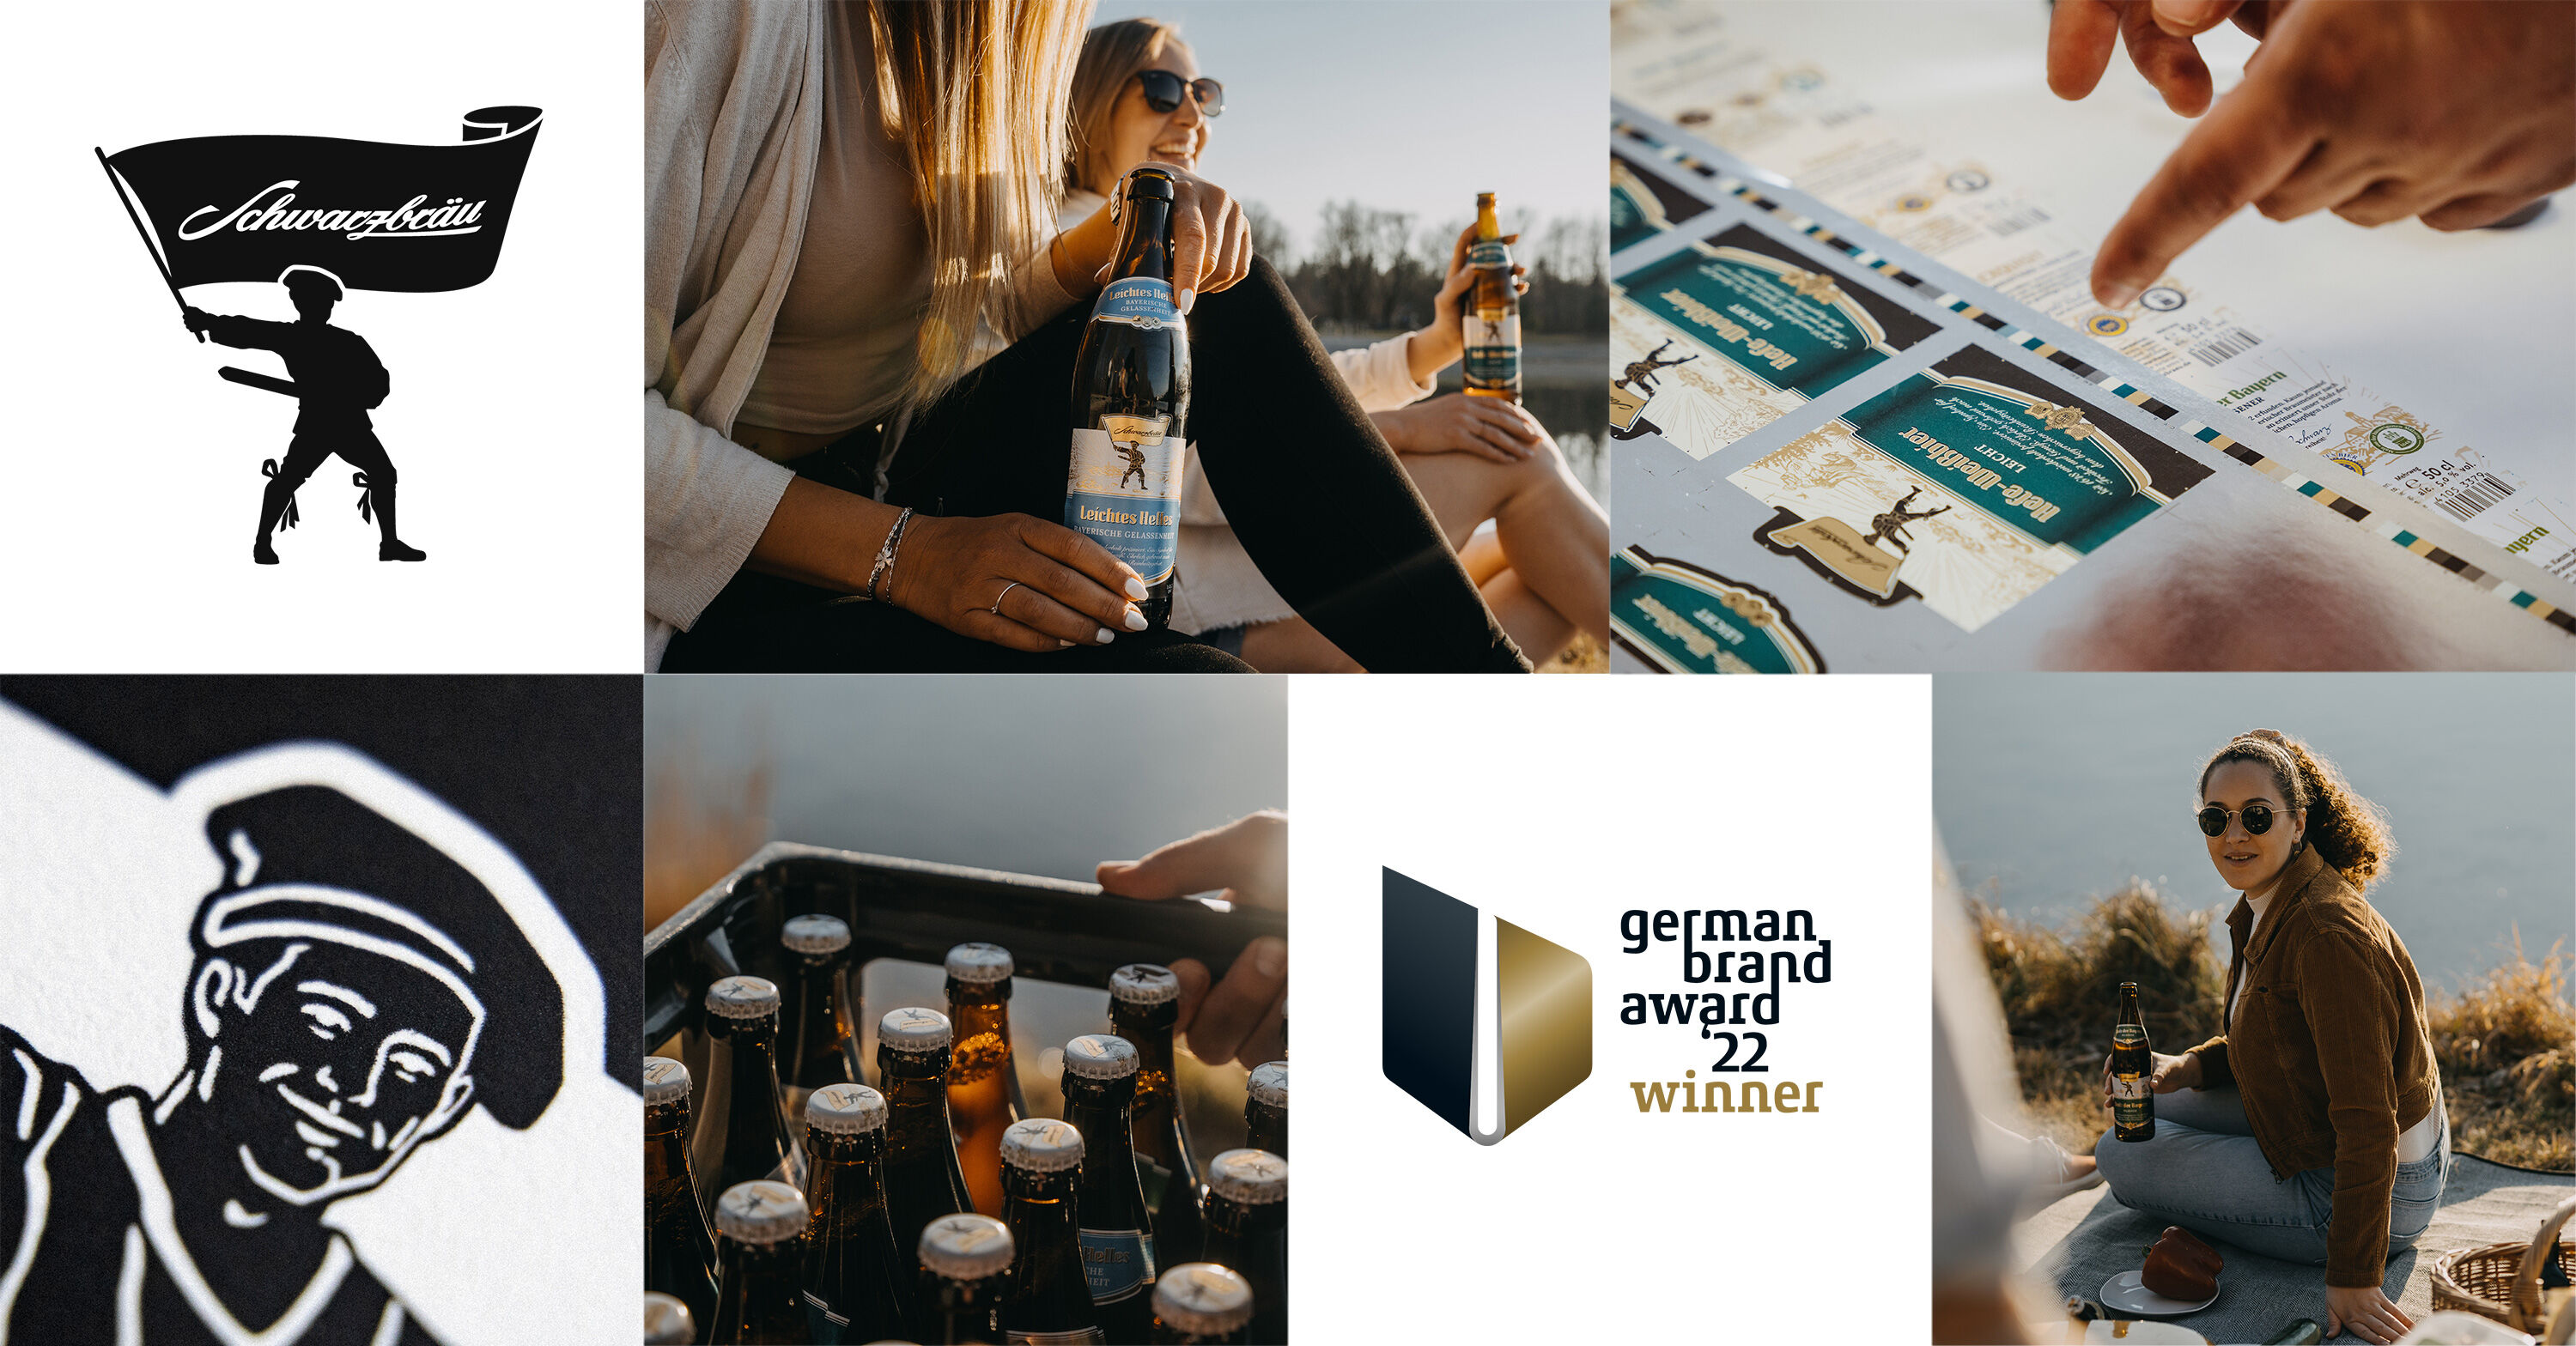 Eine Collage aus verschiedenen Elementen wie das Logo der Schwarzbraeu, Produktfotos von Bieren und eine Auszeichnung der German Brand Awards